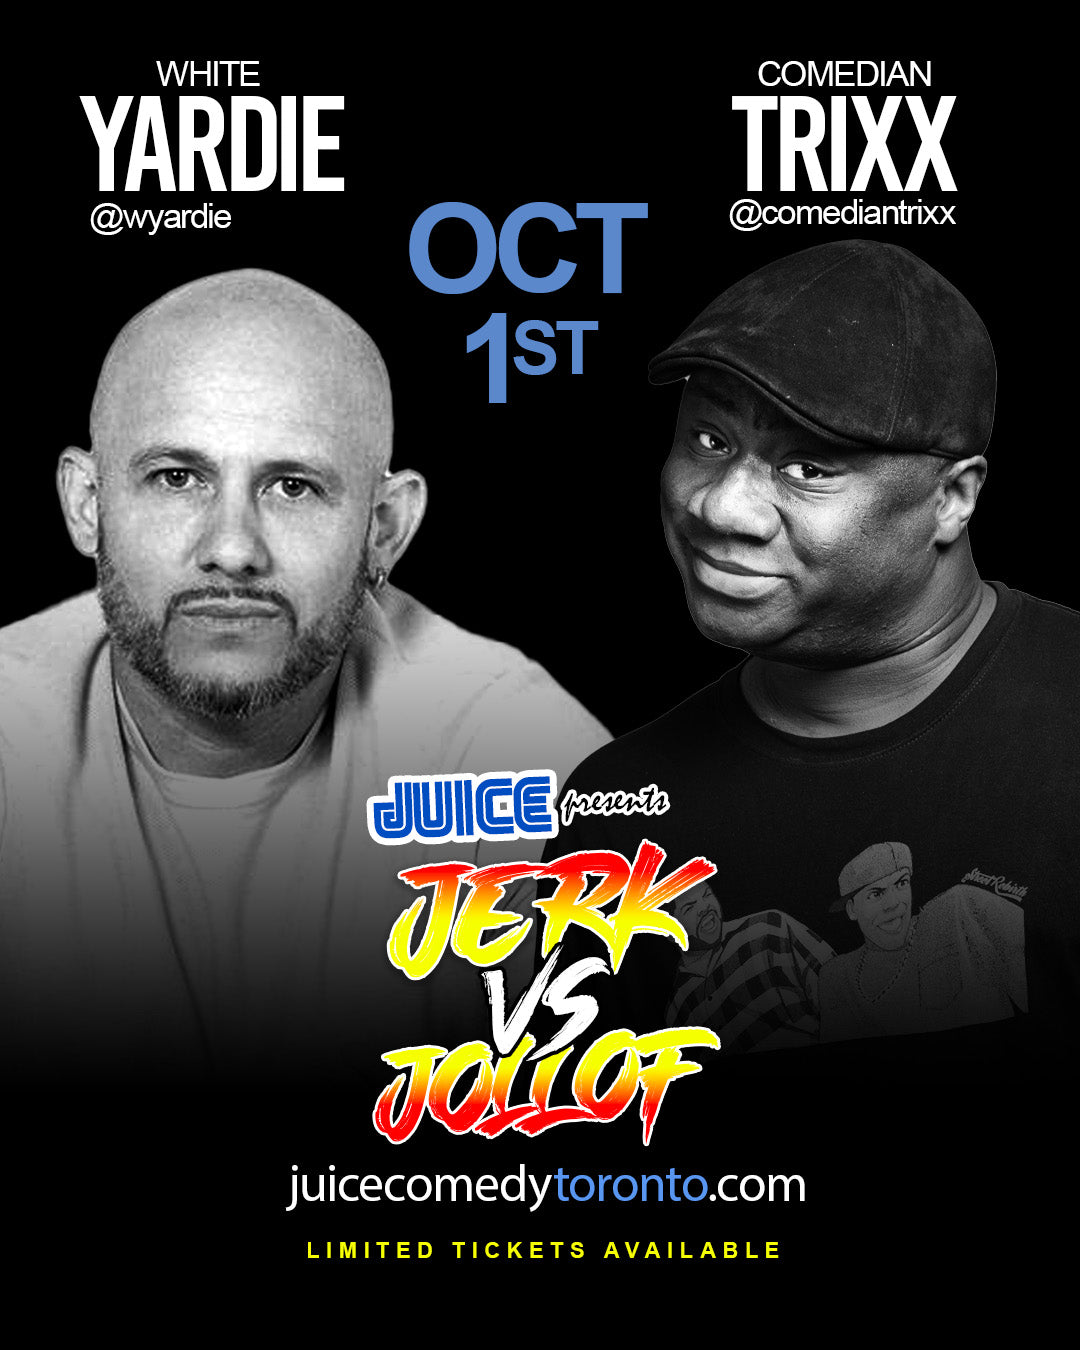 JUICE & Africa vs West Indies pres "Jerk vs Jollof" feat White Yardie & Trixx